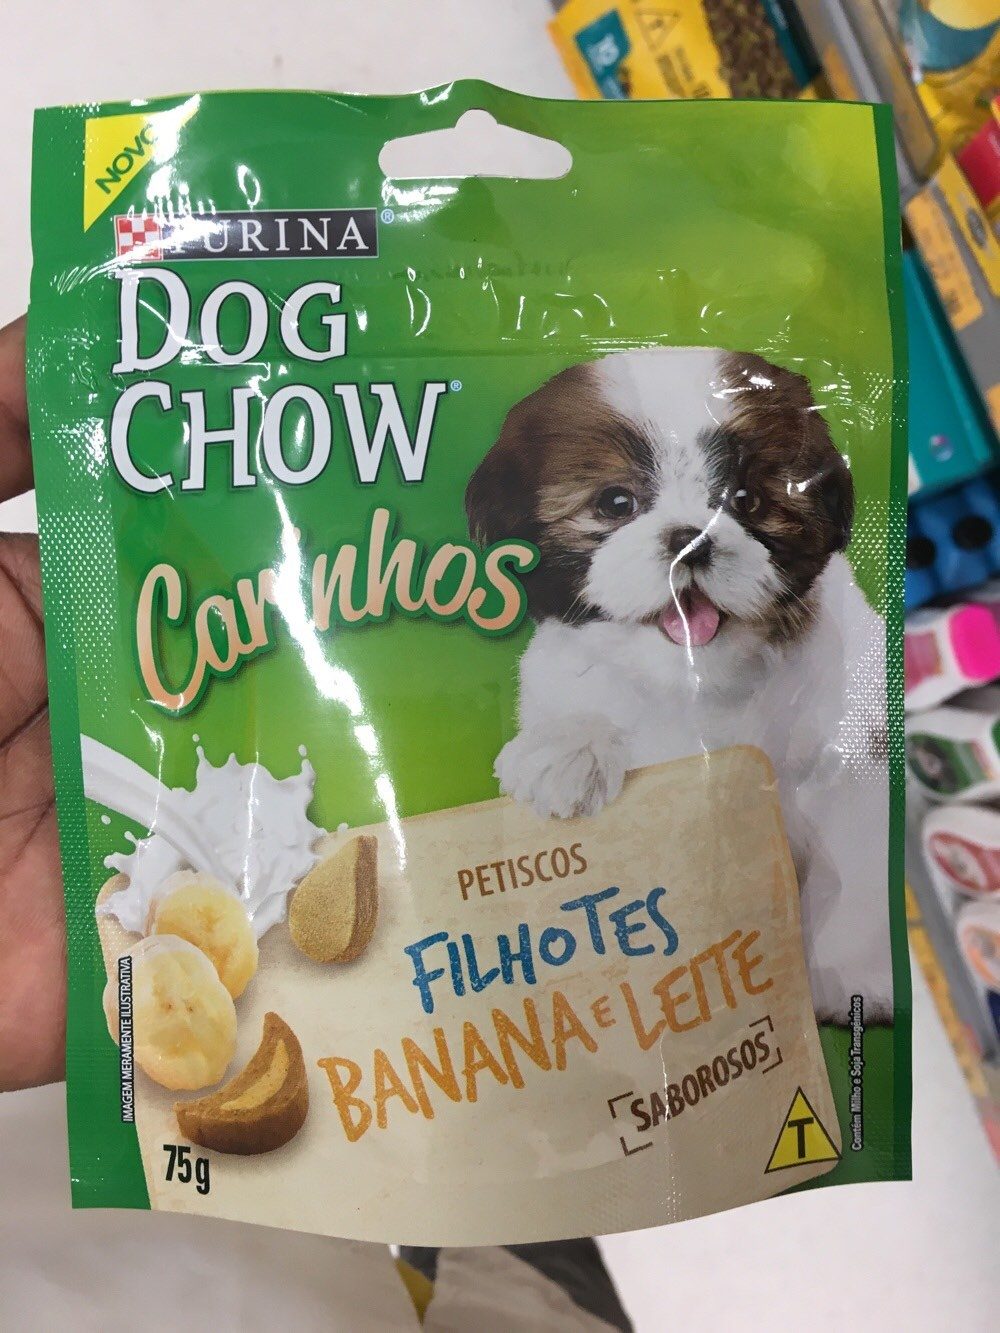 Alimento cão Dog chow carinhos 75g filhotes banana e leite - Product - pt